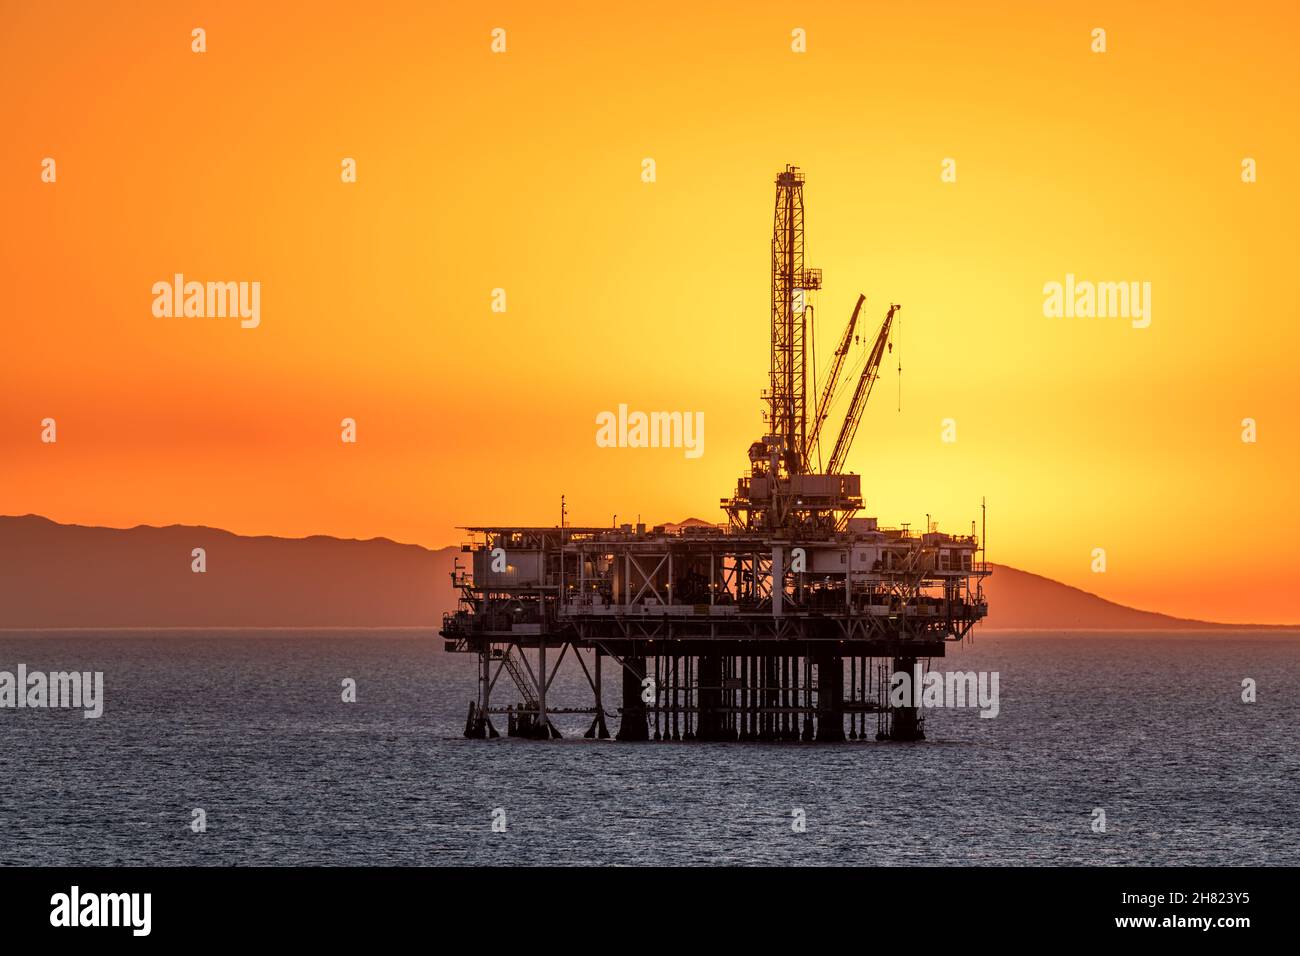 La plataforma petrolífera offshore frente a la costa de California se enmarca contra un cielo naranja lleno de humo de un incendio cercano mientras el sol se pone detrás de la plataforma. Foto de stock